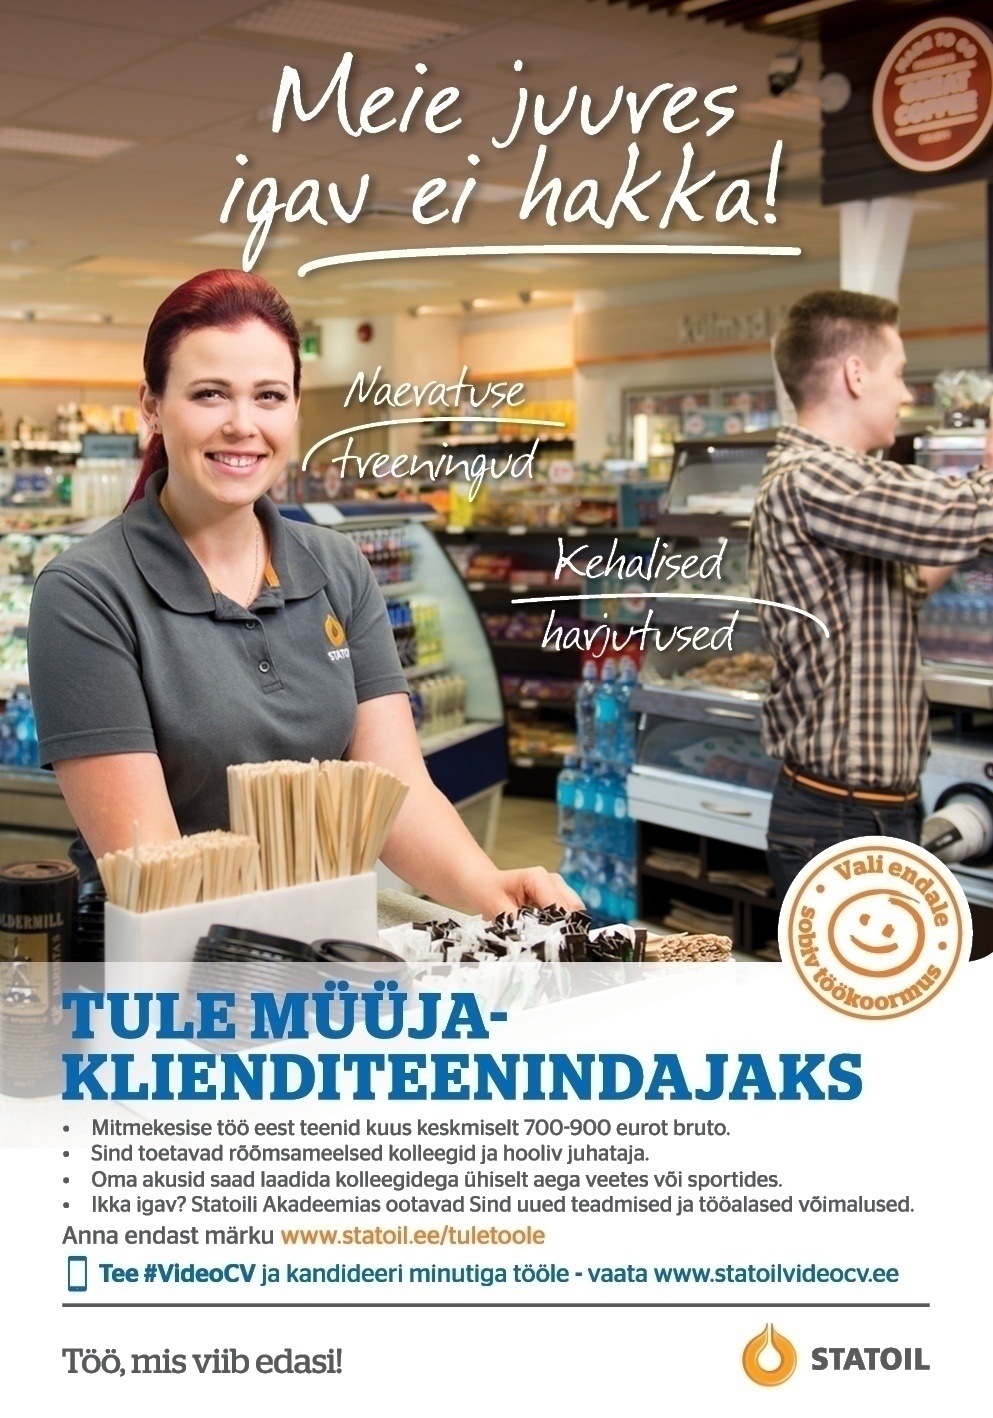 Circle K Eesti AS Müüja-klienditeenindaja Jõhvi ja Kohtla-Järve teenindusjaamadesse